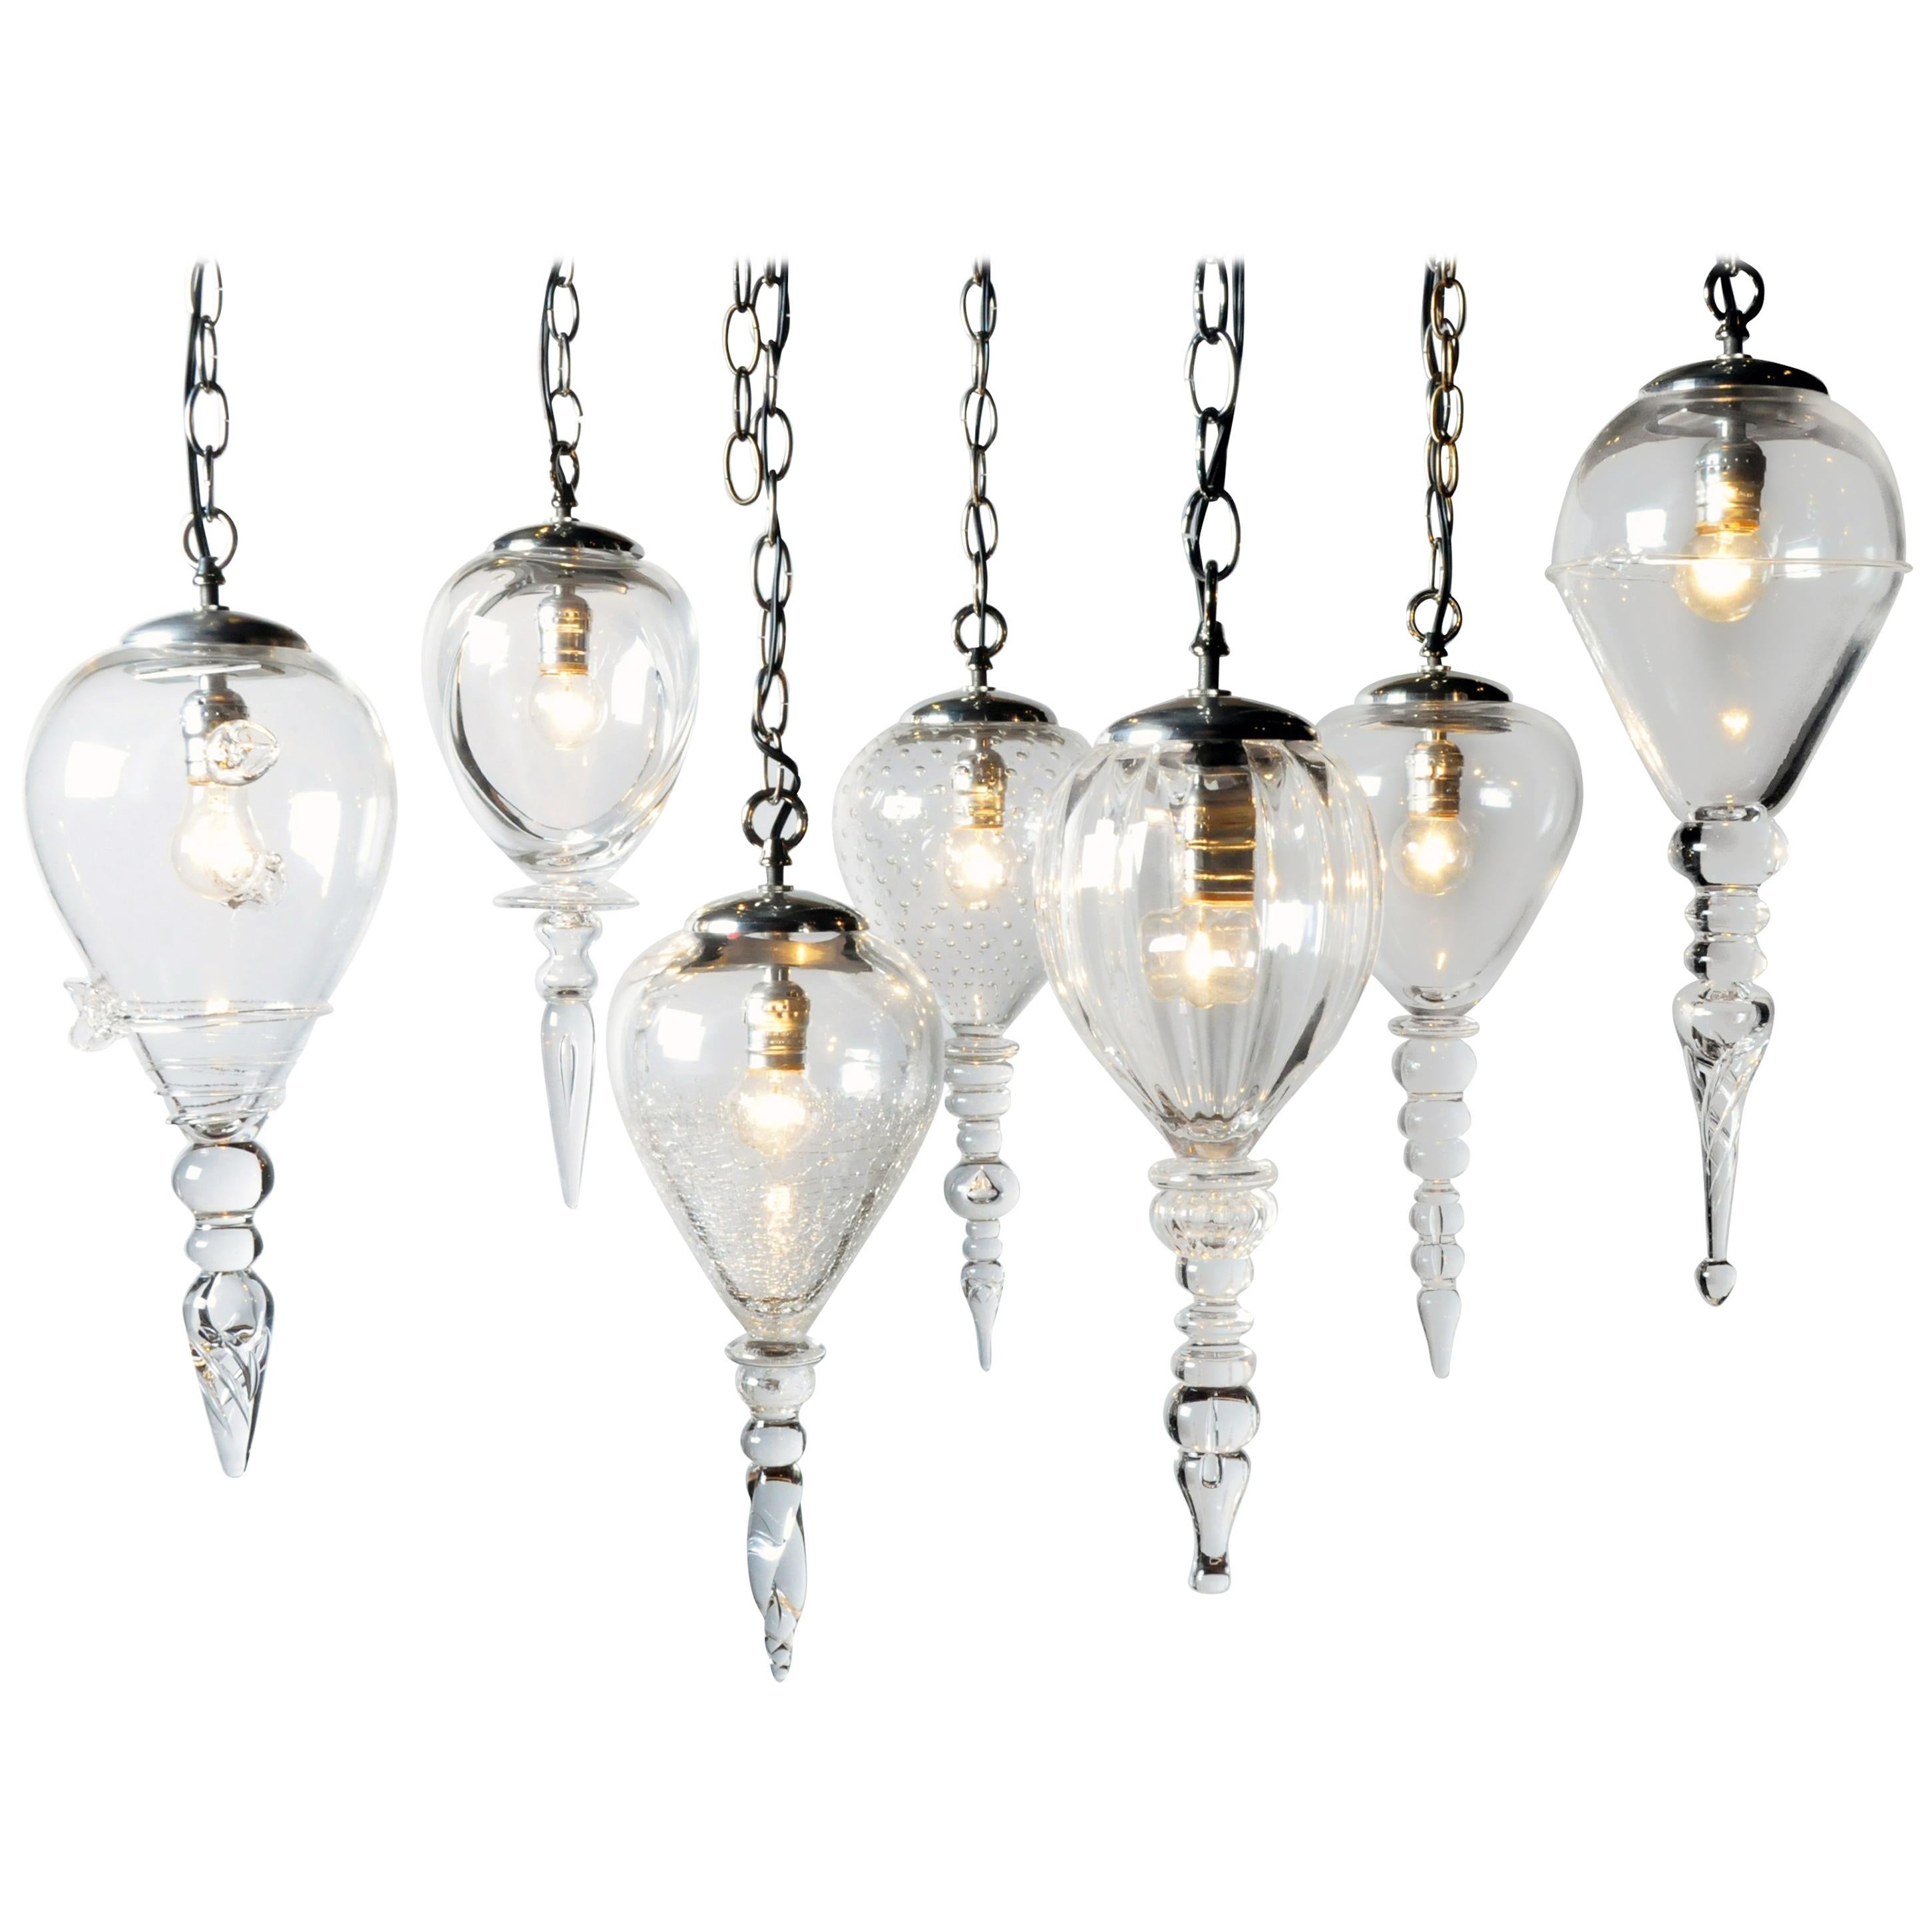 Set of Seven Handblown Glass Pendant Light Fixture